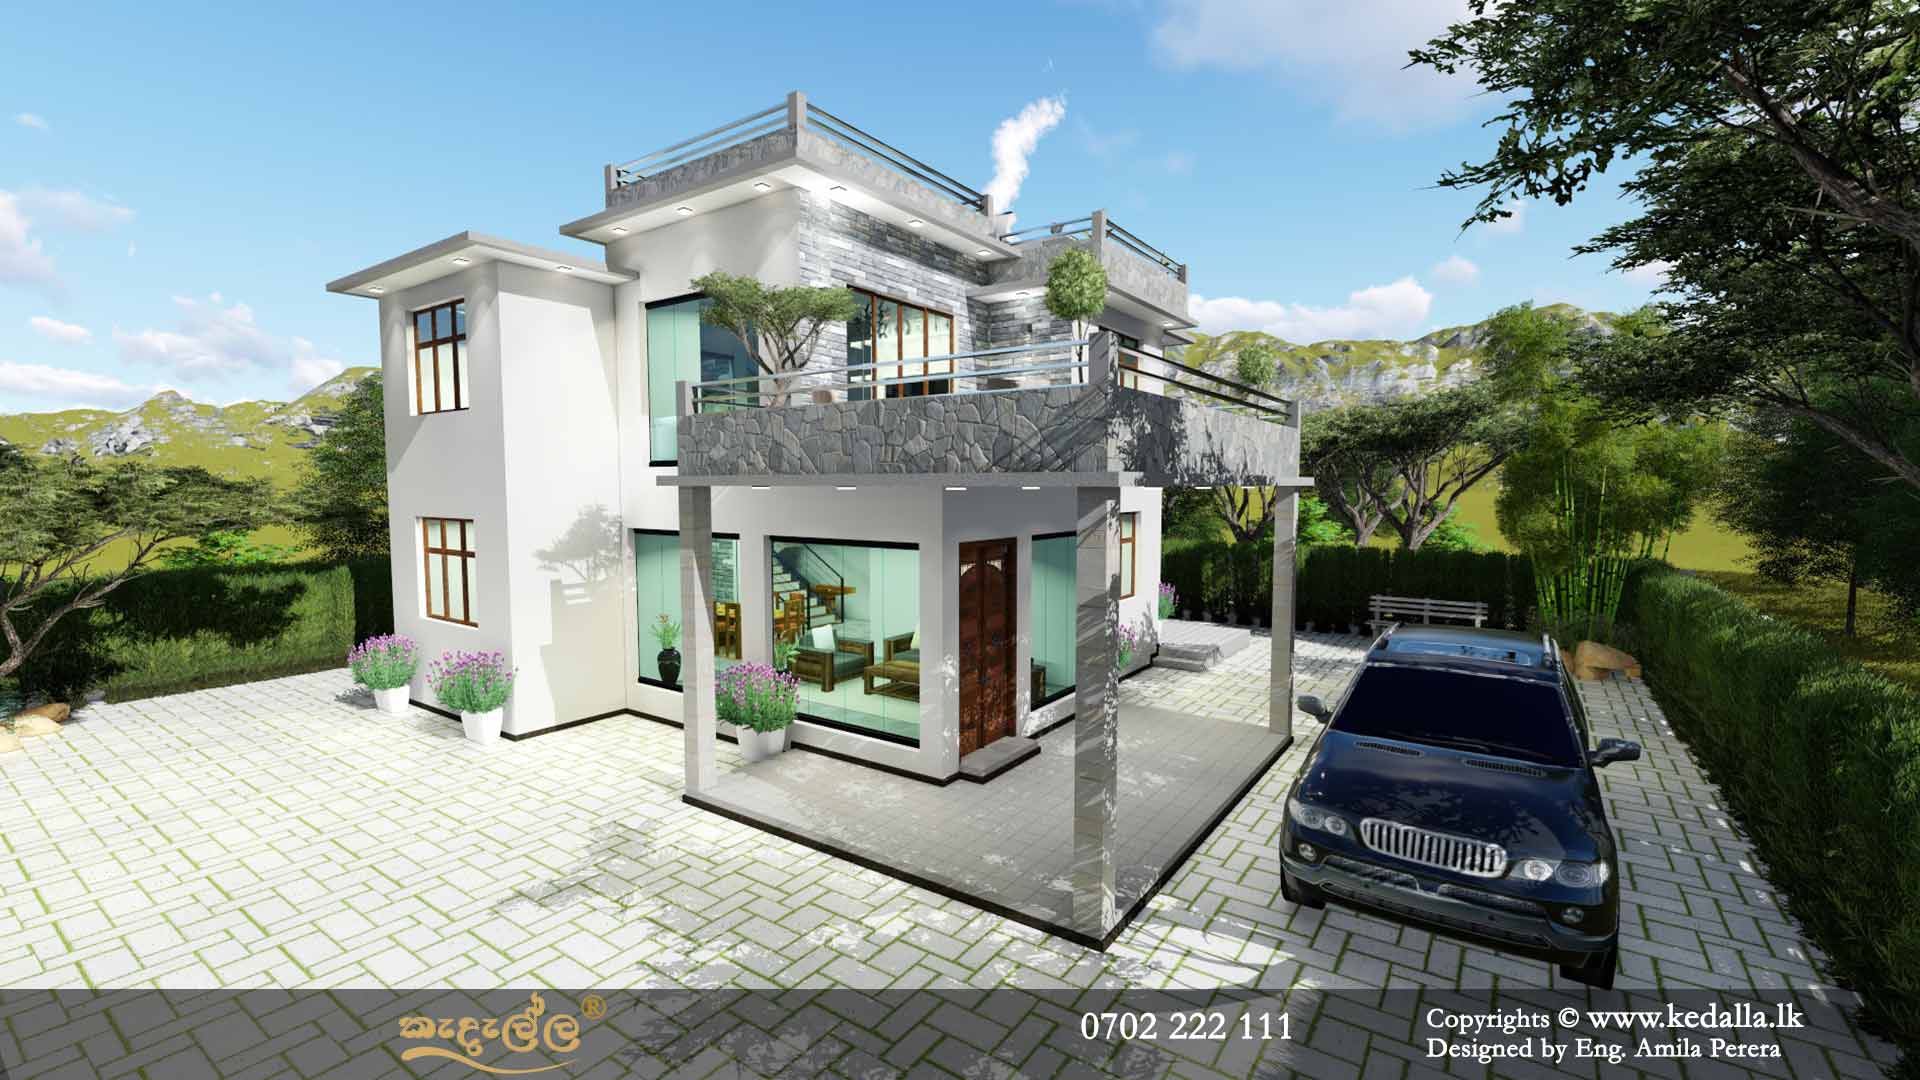 The leading house construction company in Sri Lanka